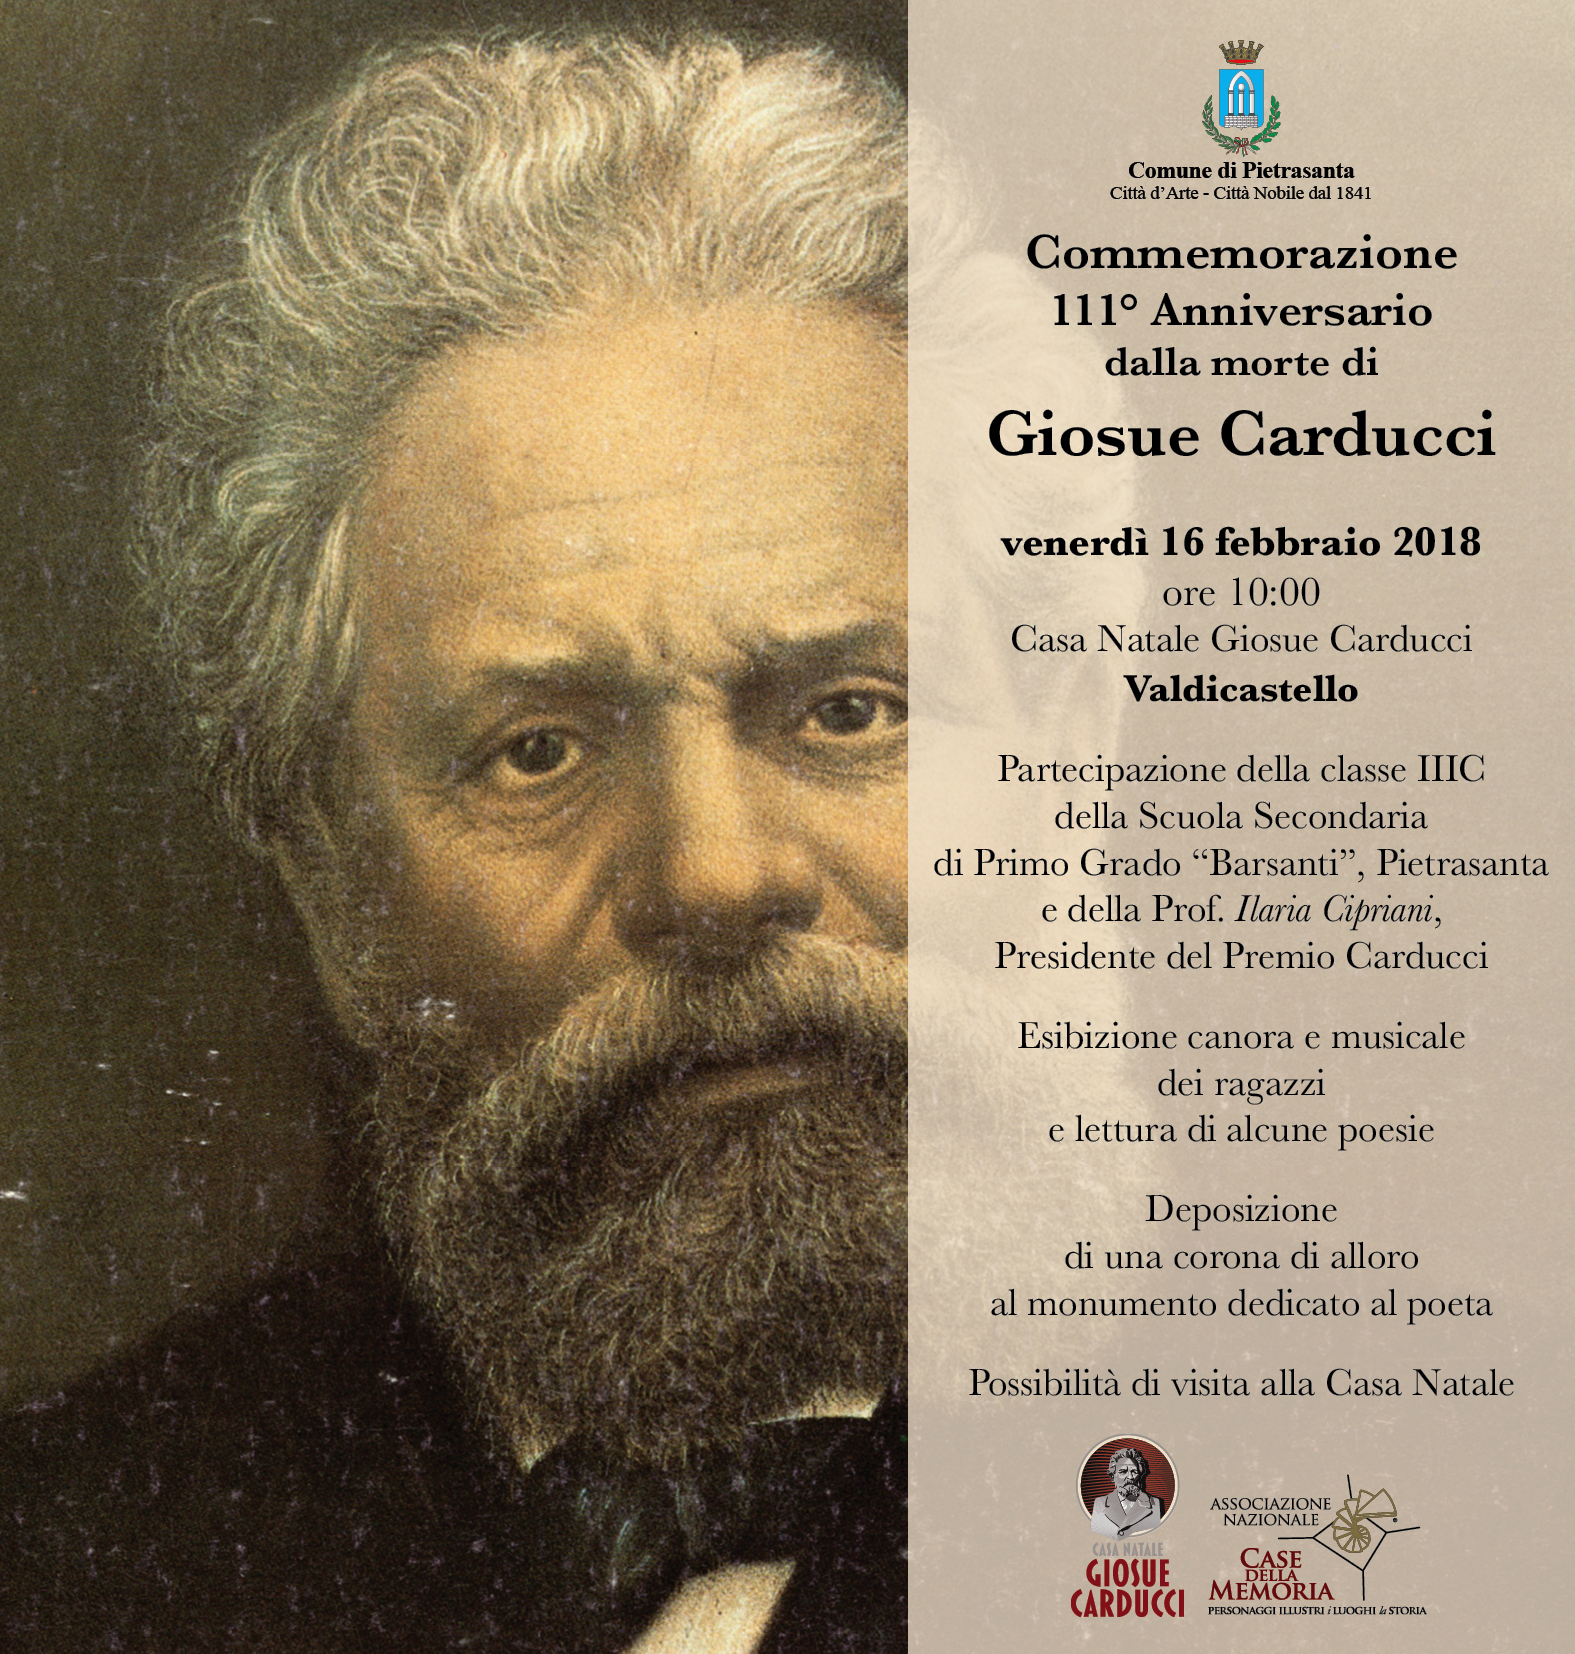 111° Anniversario dalla morte di Giosue Carducci, commemorazione a Valdicastello